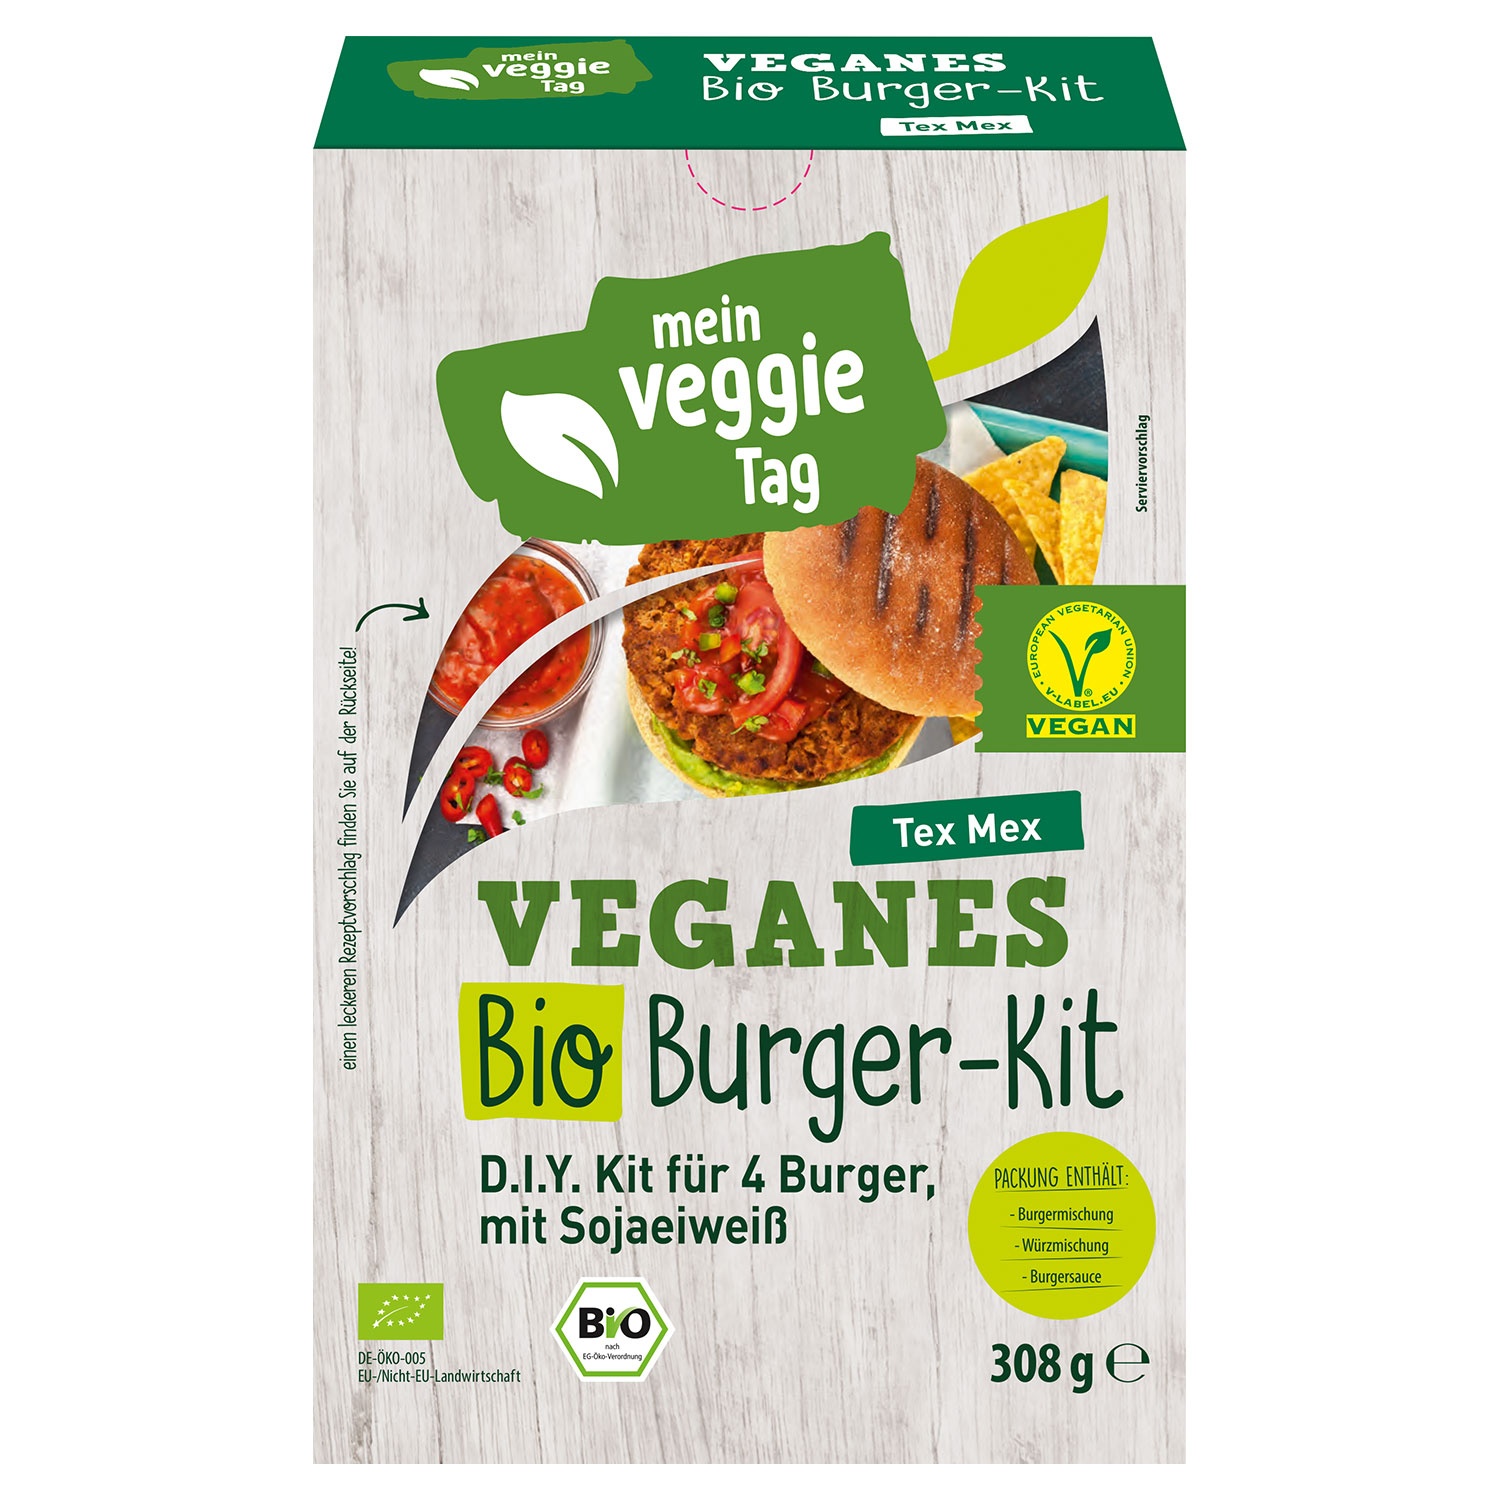 MEIN VEGGIE TAG Veganes Bio-Burger-Kit 308 g